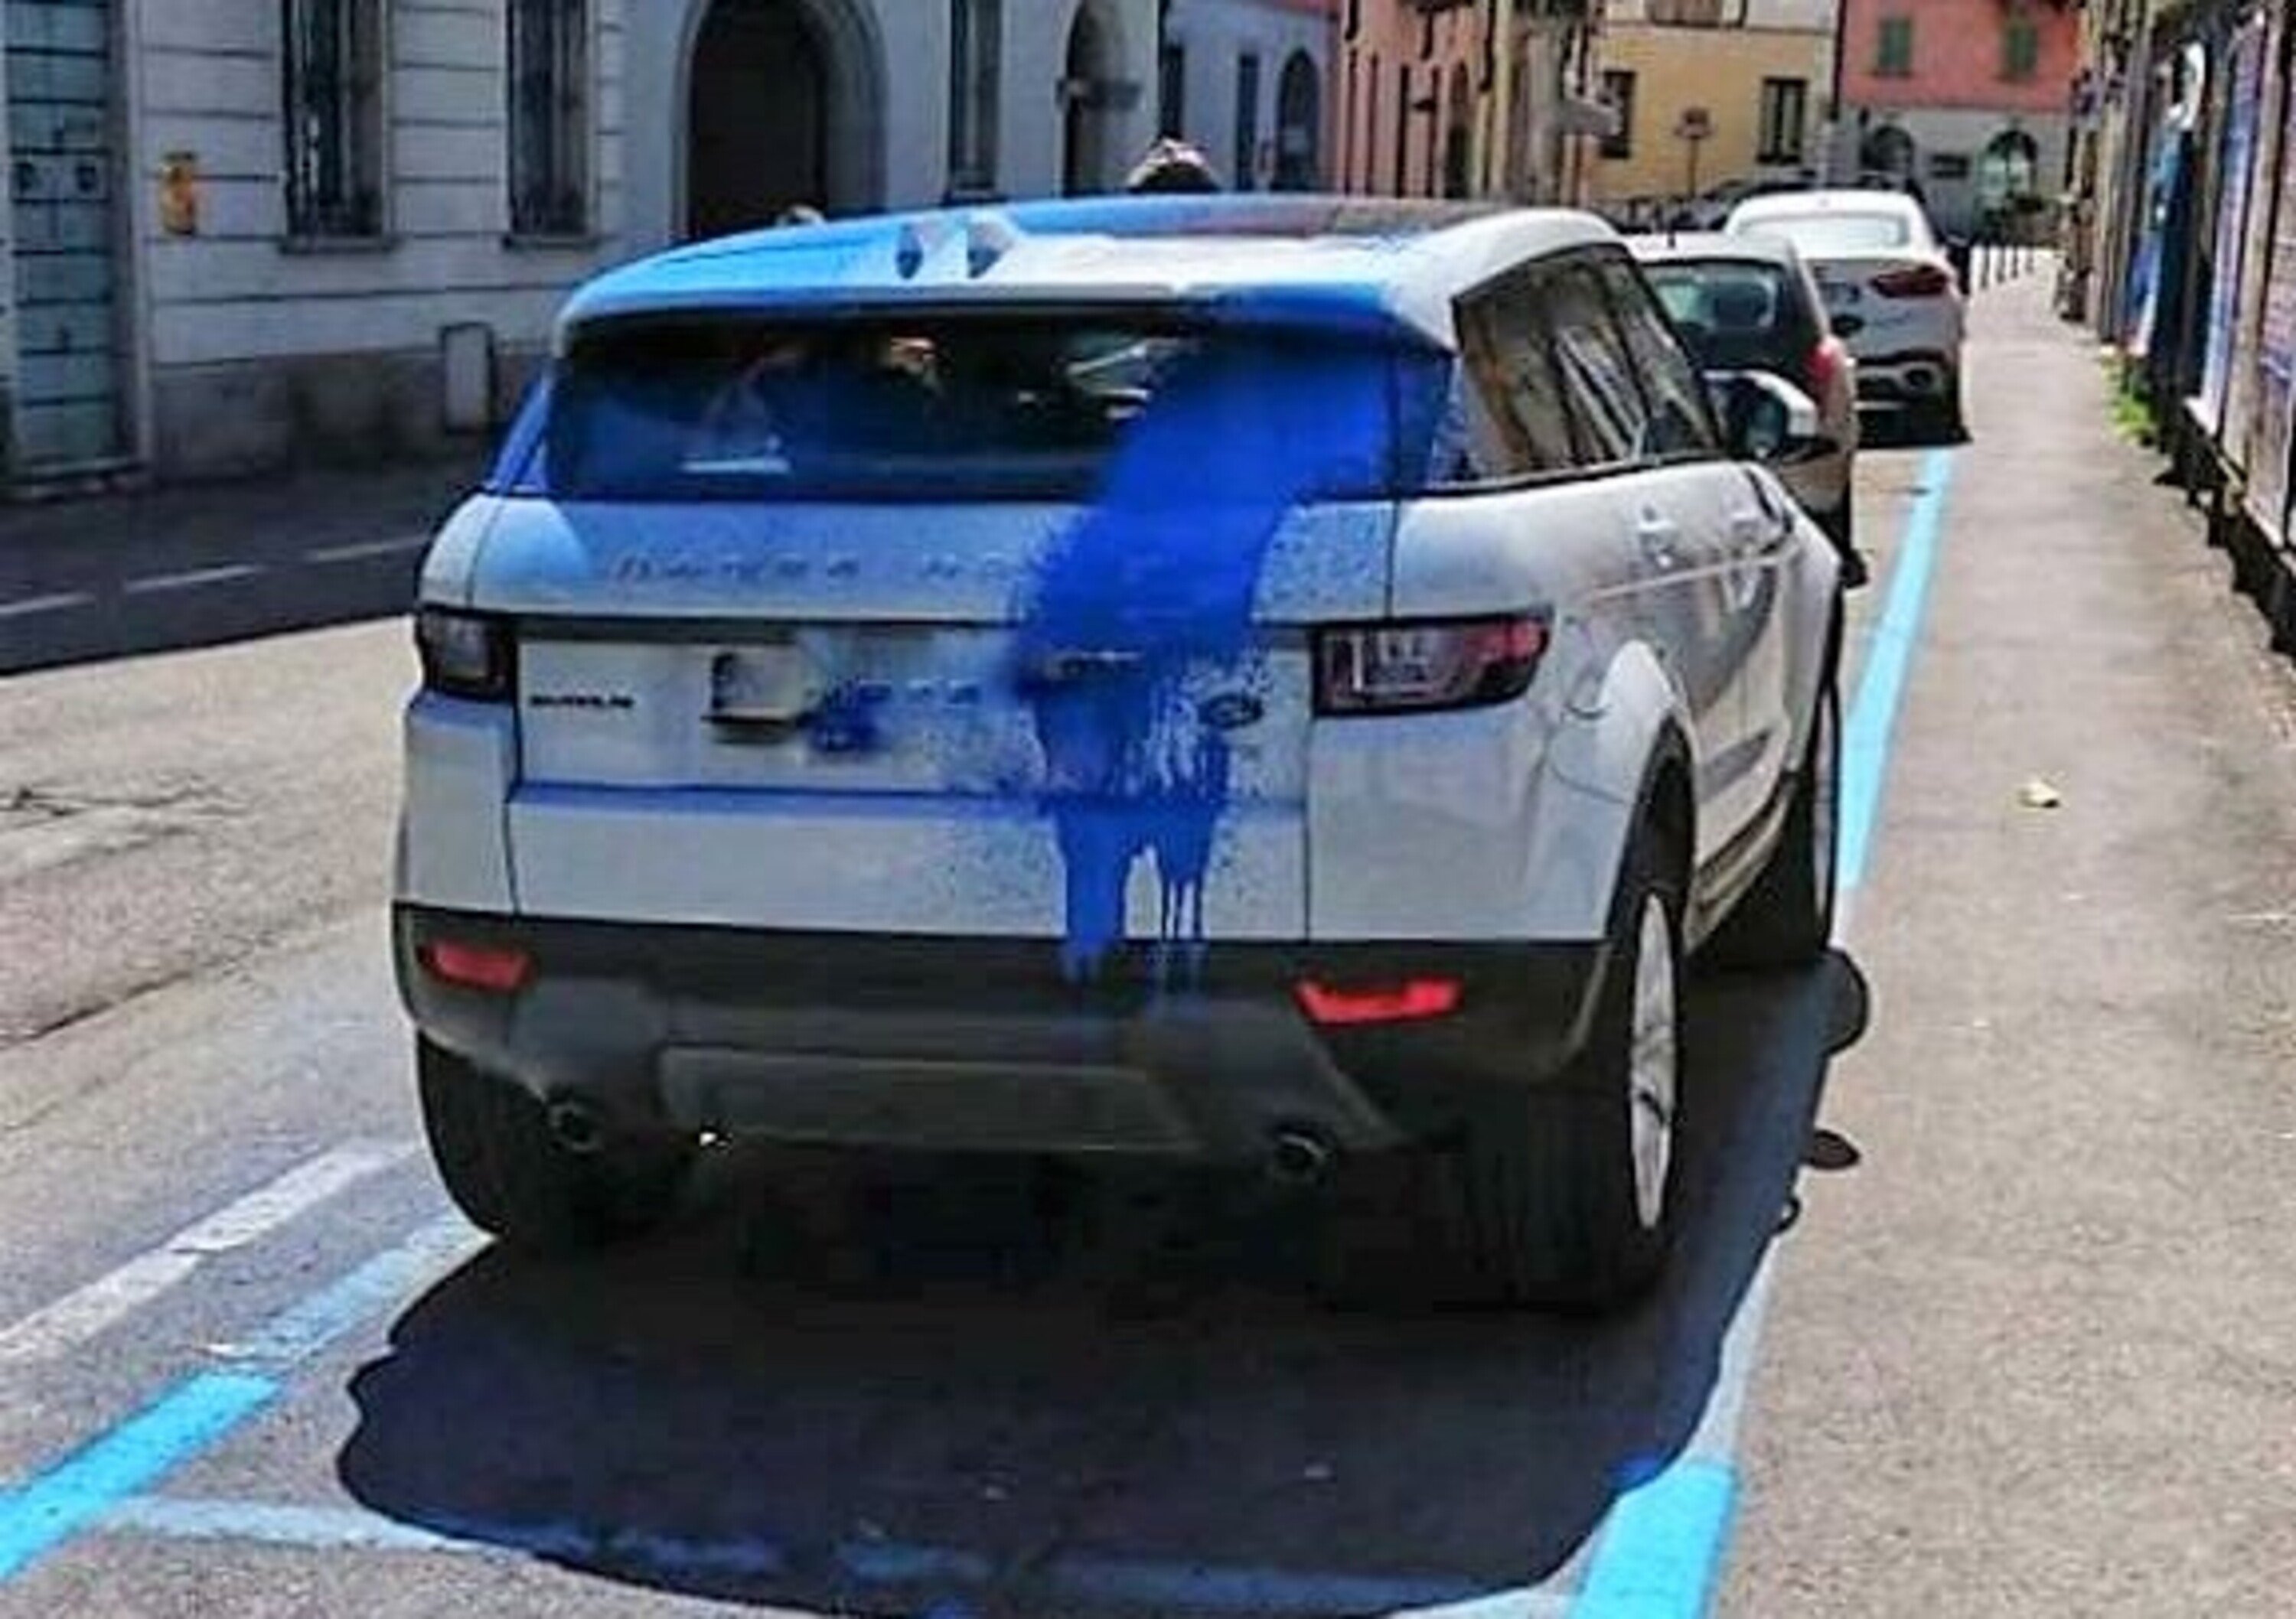 Parcheggio incurante della manutenzione stradale? Anche sulla carrozzeria del Range Rover si dipinge il blu